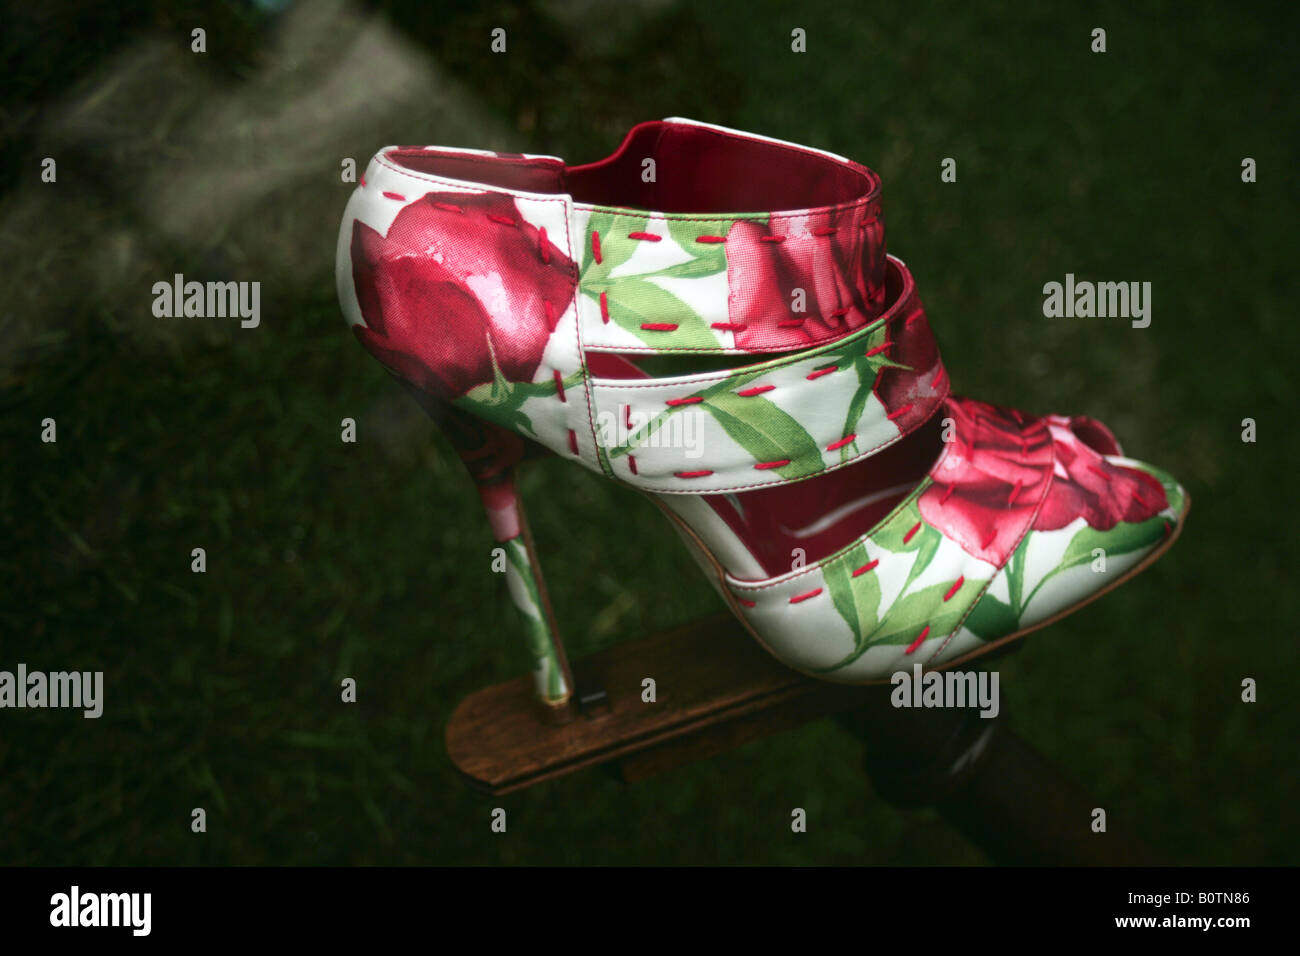 Manolo Blahnik shoe designed for the Chelsea Flower Show 2008 Stock Photo